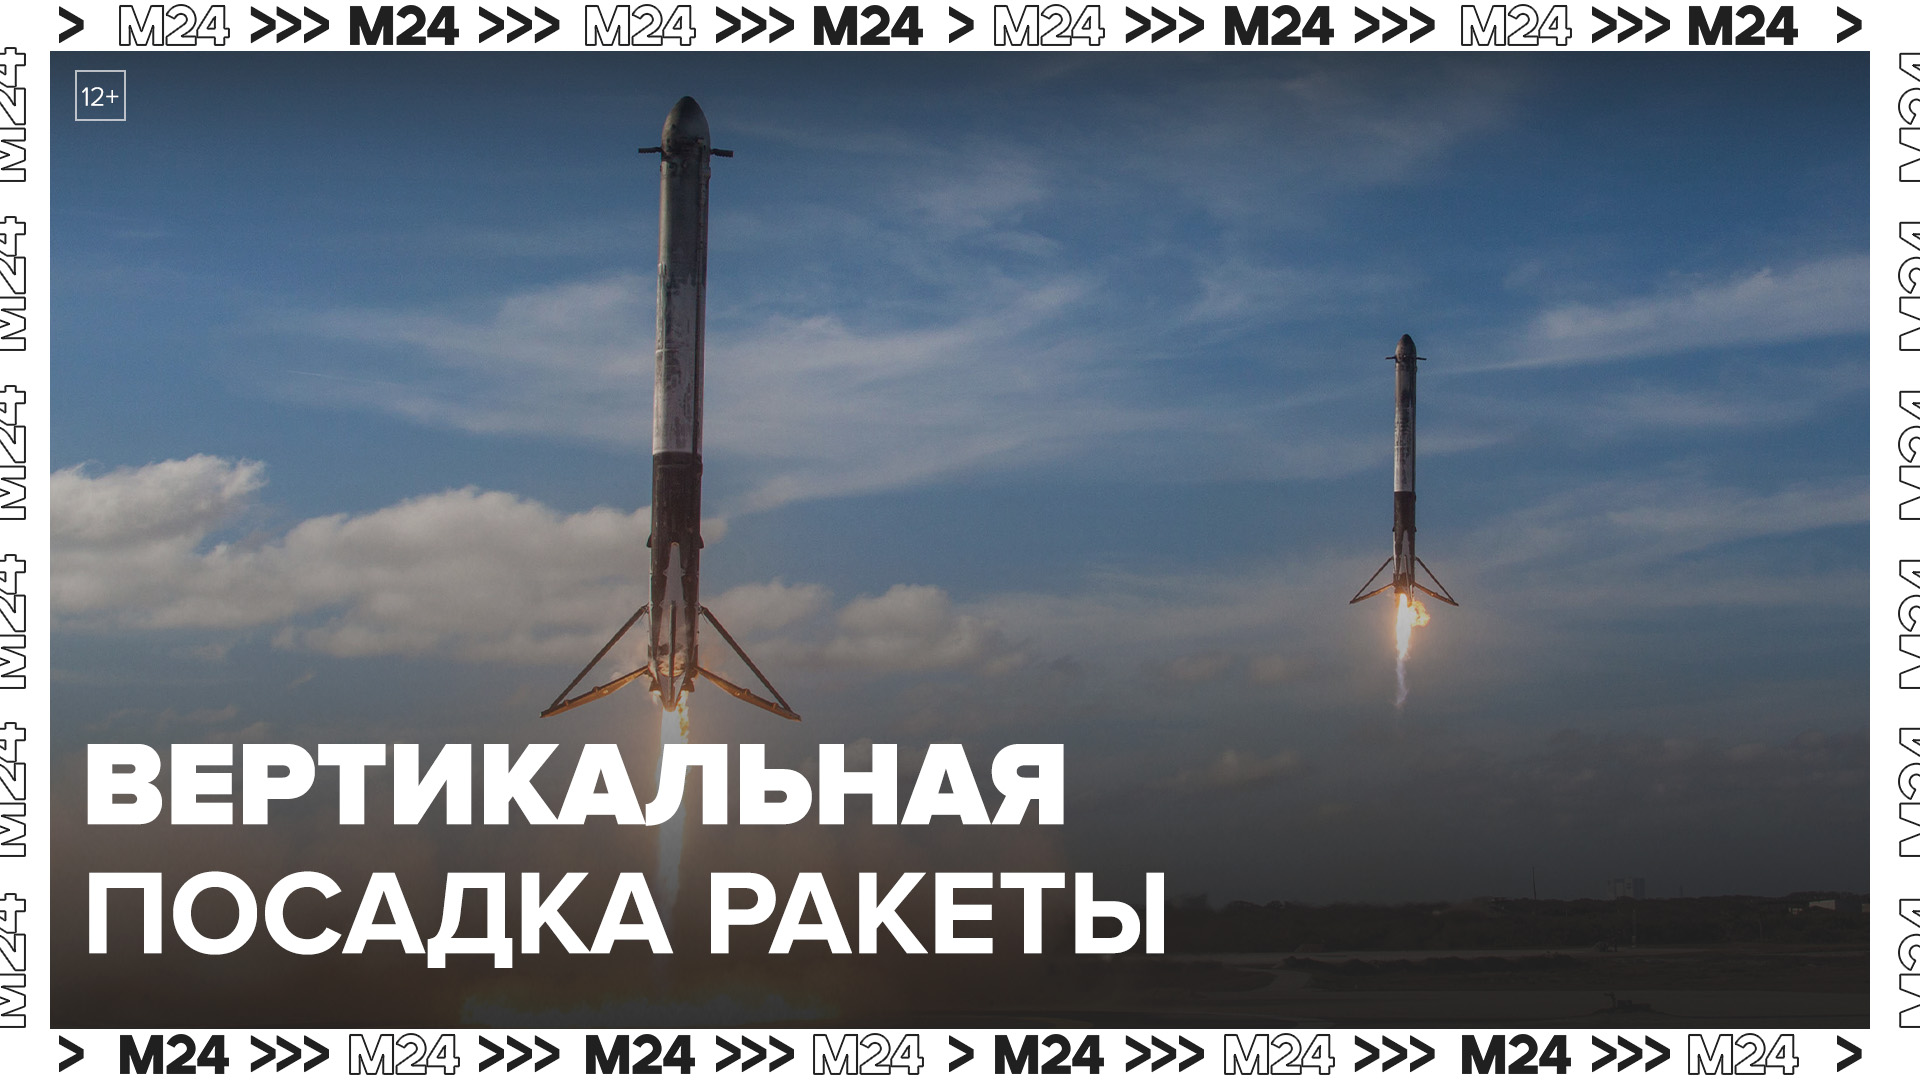 Компания LandSpace успешно протестировала технологию вертикальной посадки ракеты - Москва 24